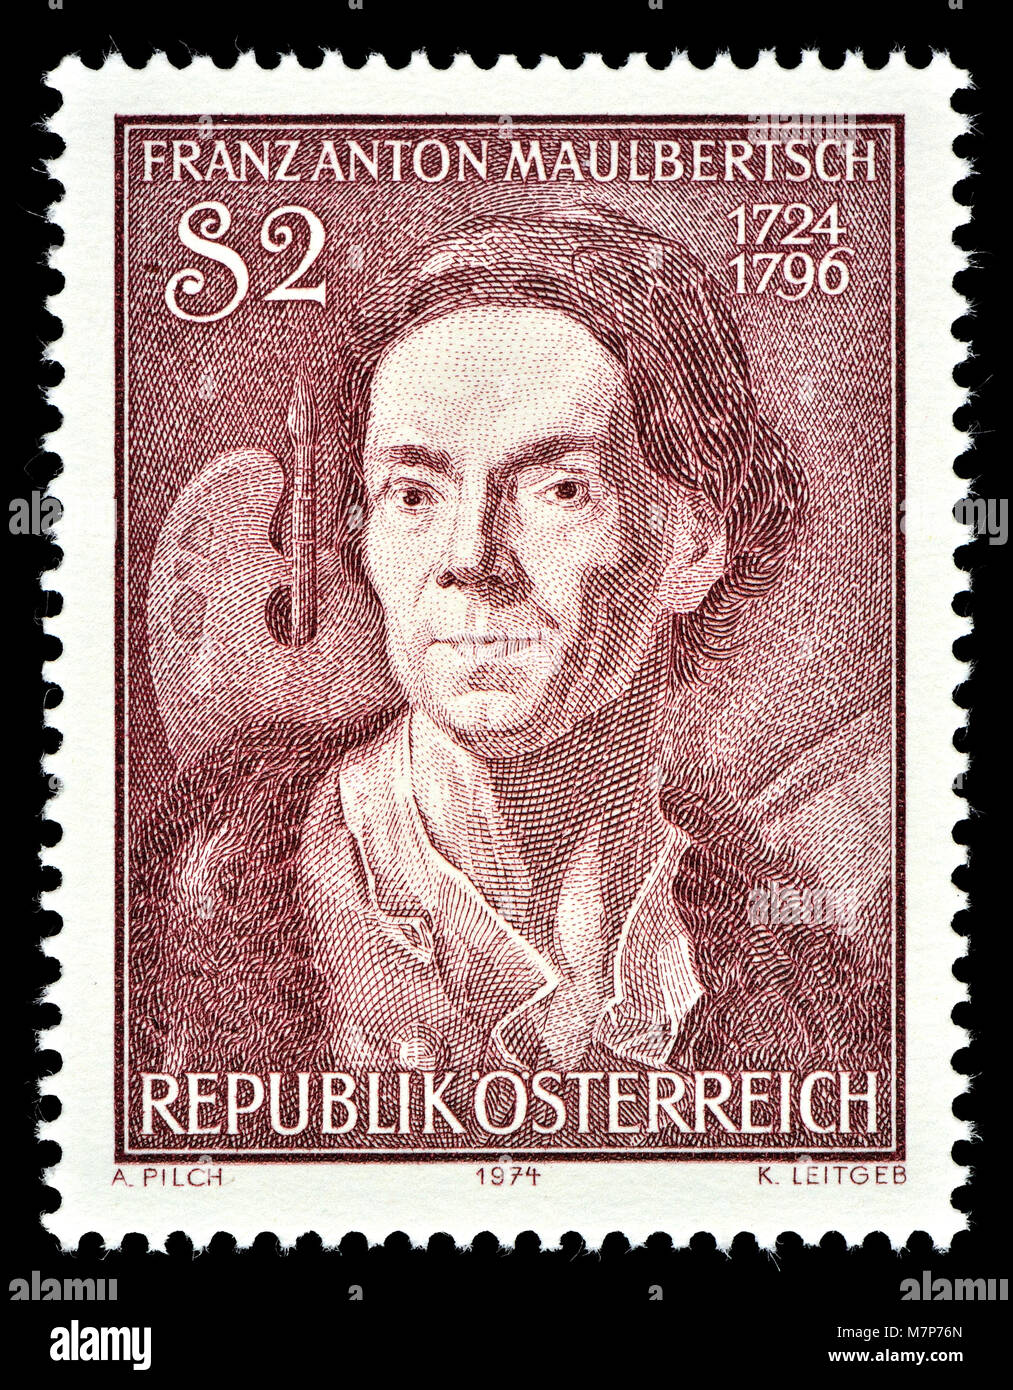 Österreichische Briefmarke (1974): Franz Anton Maulbertsch (1724 - 1796) österreichischer Maler und Kupferstecher, renommierte Exponent der Deutschen Roccoco Stockfoto